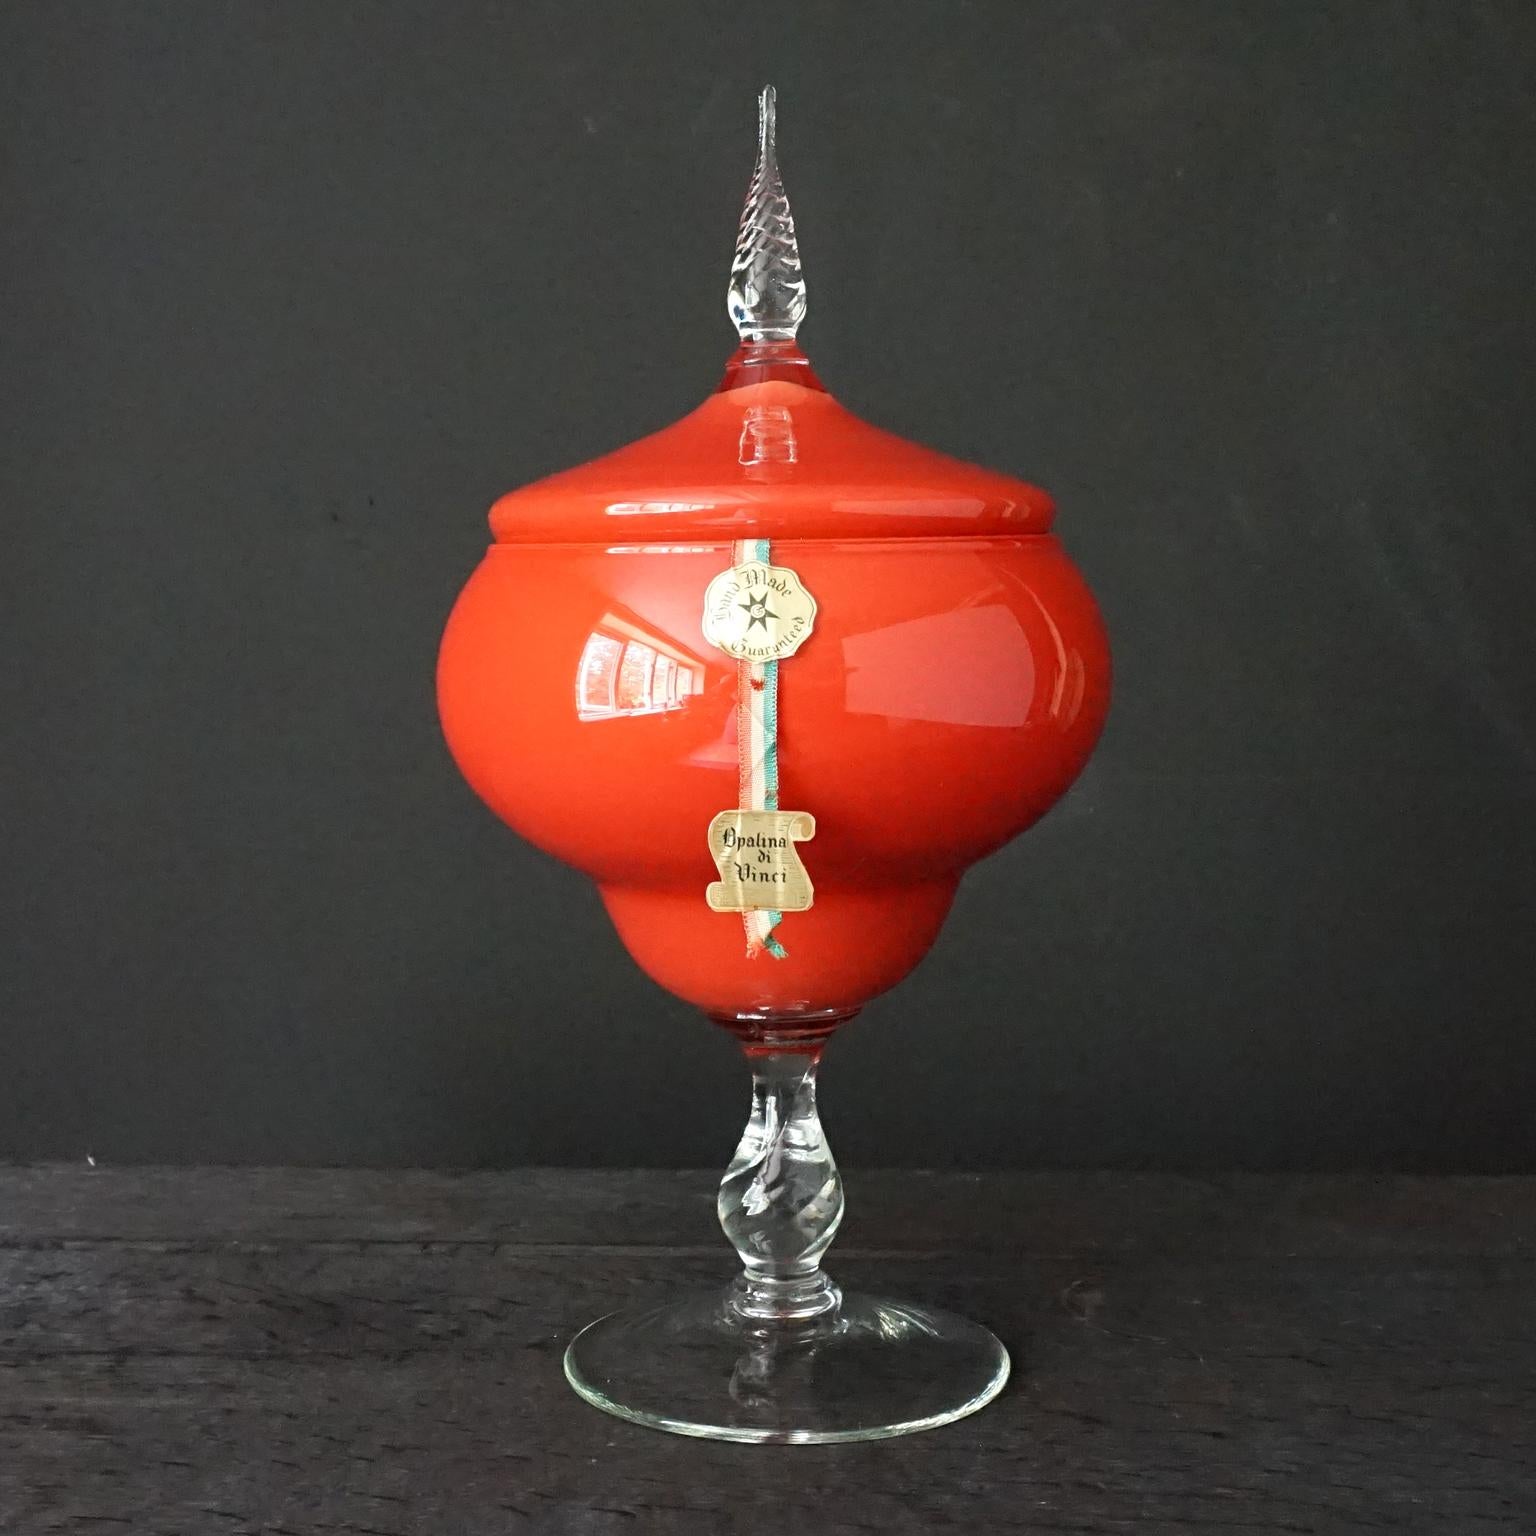 Grand pot à confiserie ou à apothicaire en verre MCM Mid-Century-Modern Italian VNC Opalina di Vinci 2-layers cased dans la couleur rouge tomate vif la plus particulière que j'aie jamais vue. 
Habituellement, le verre coulé est recouvert d'une